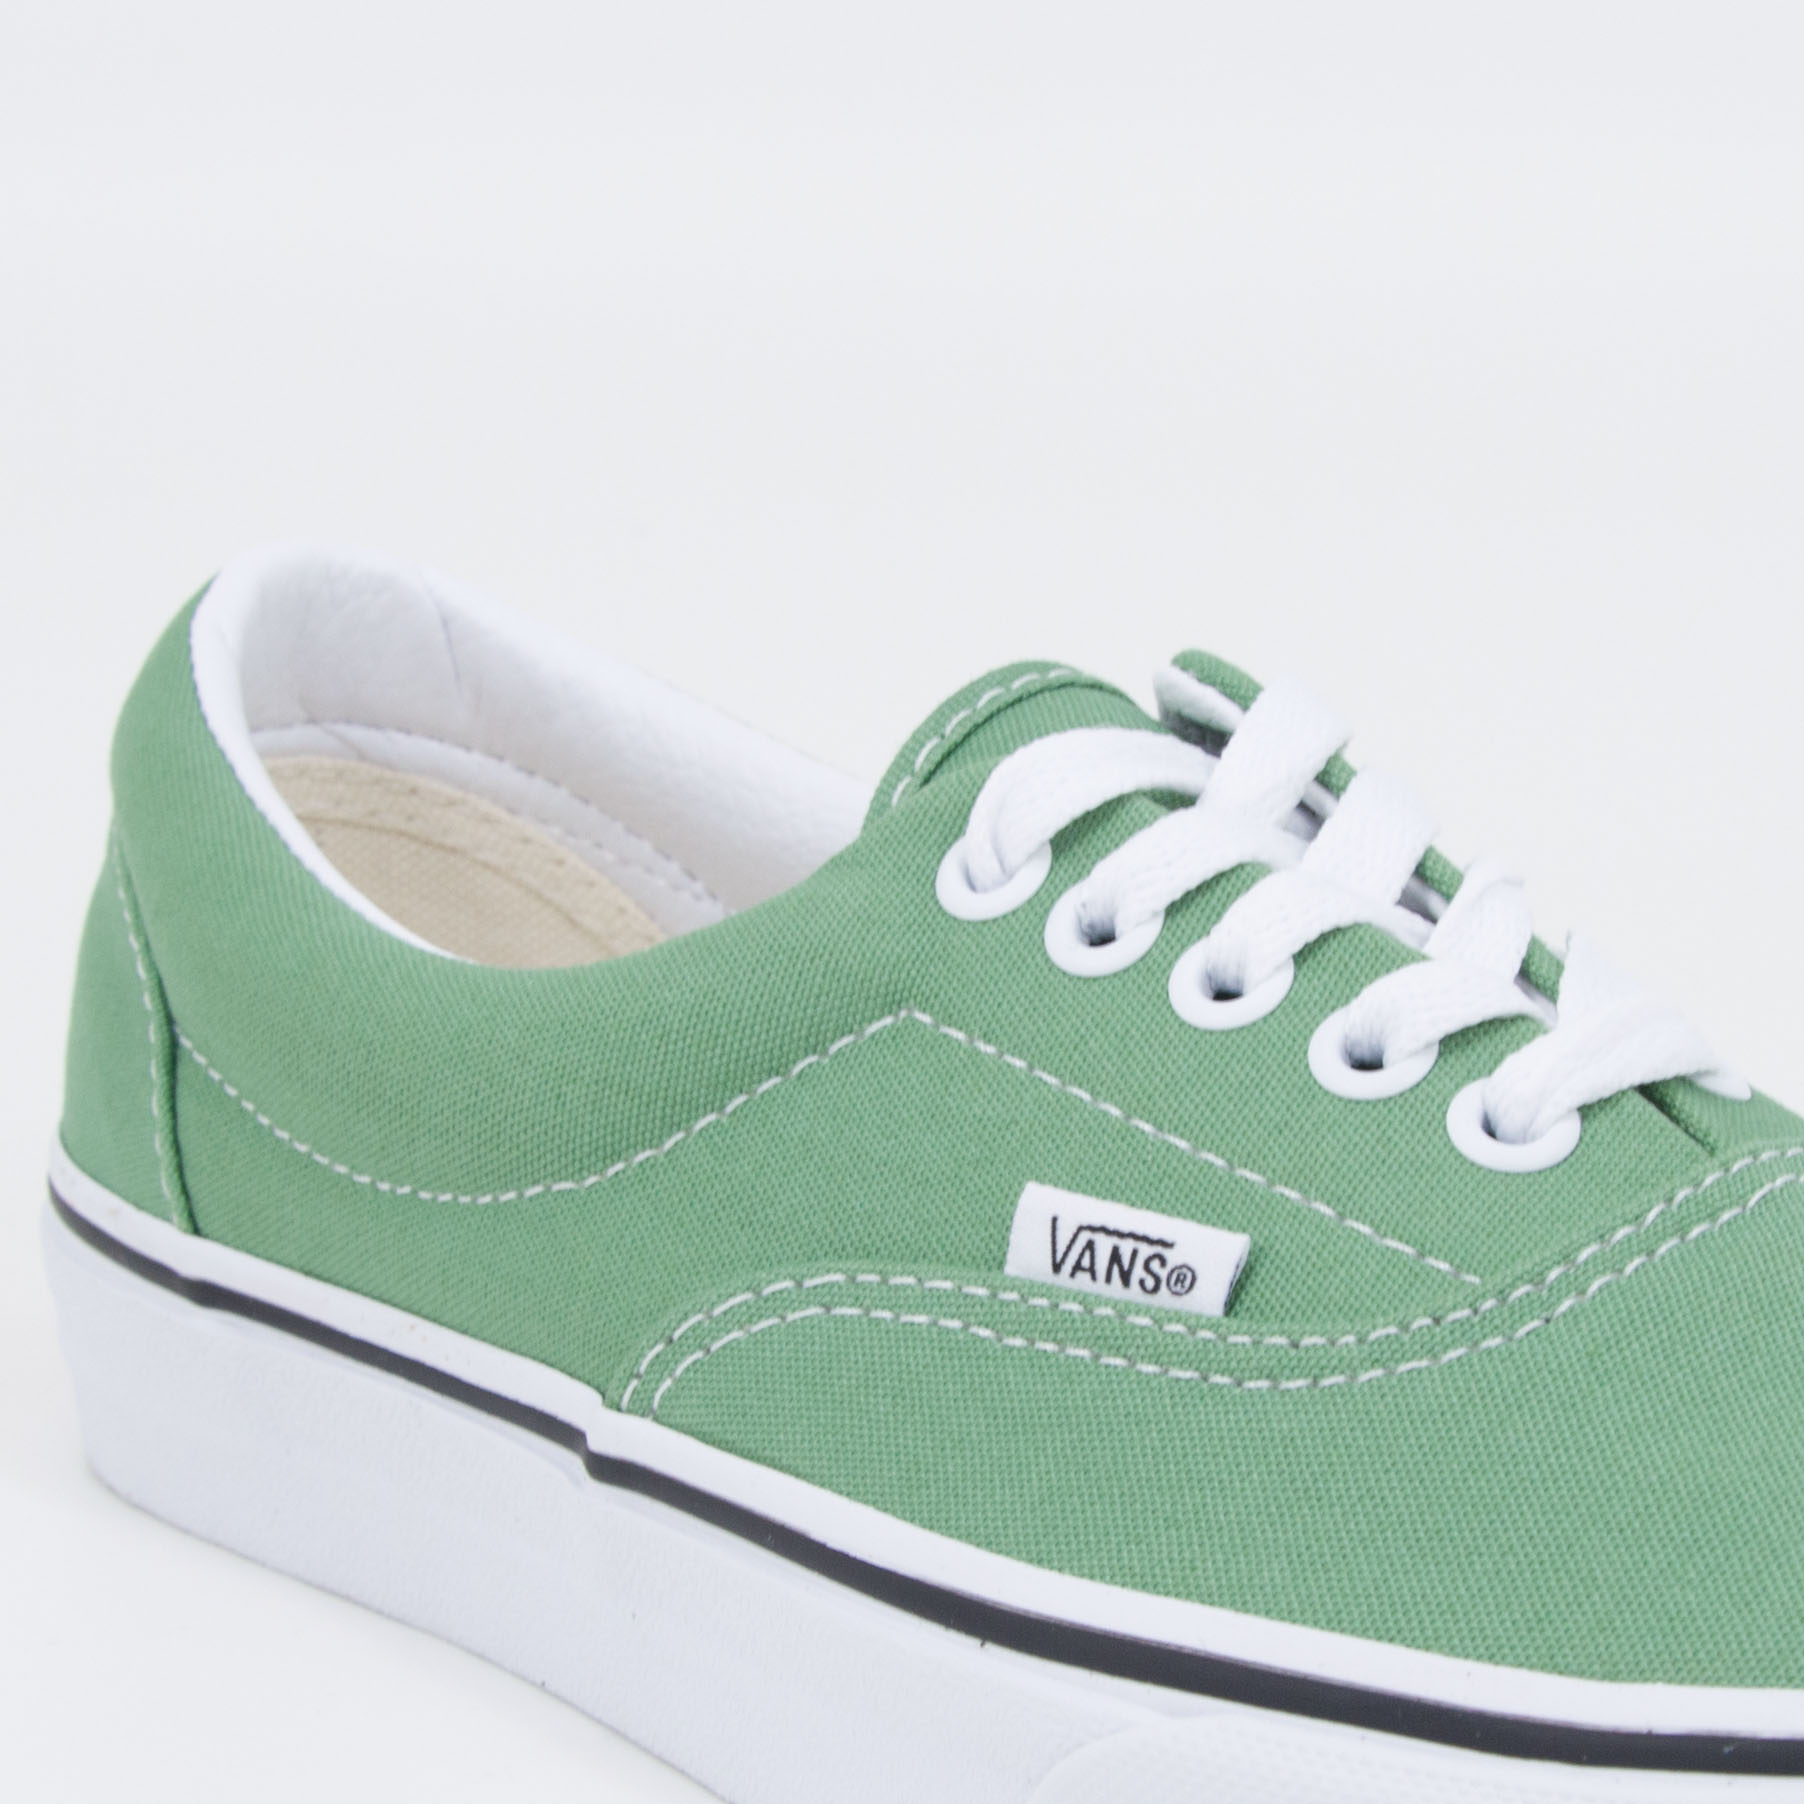 Vans - ERA - Shale Green/True White